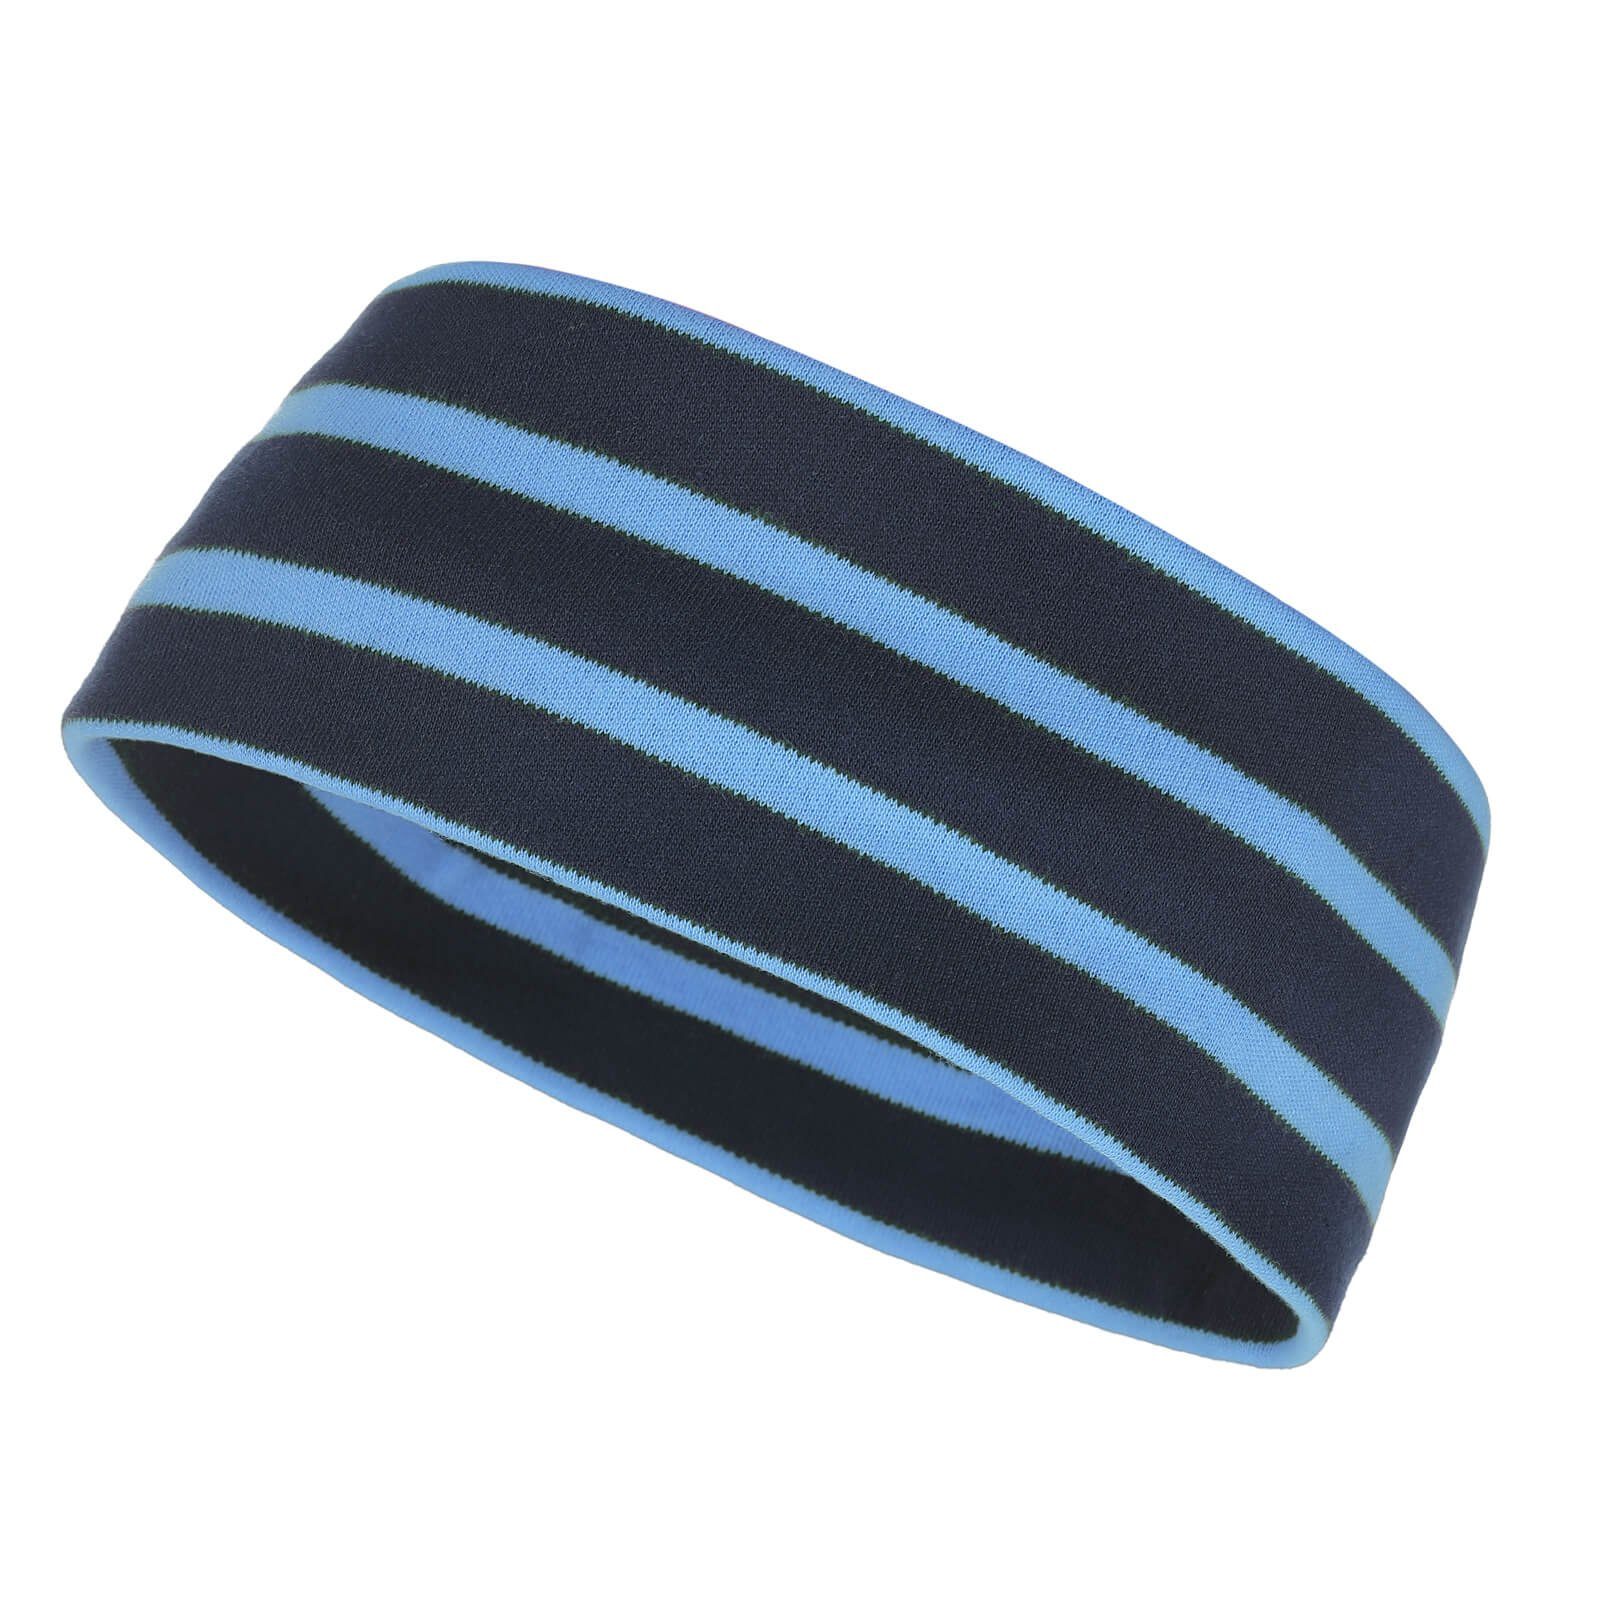 modAS Stirnband Unisex Kopfband Maritim für Kinder und Erwachsene zweilagig Baumwolle (74) blau / azur